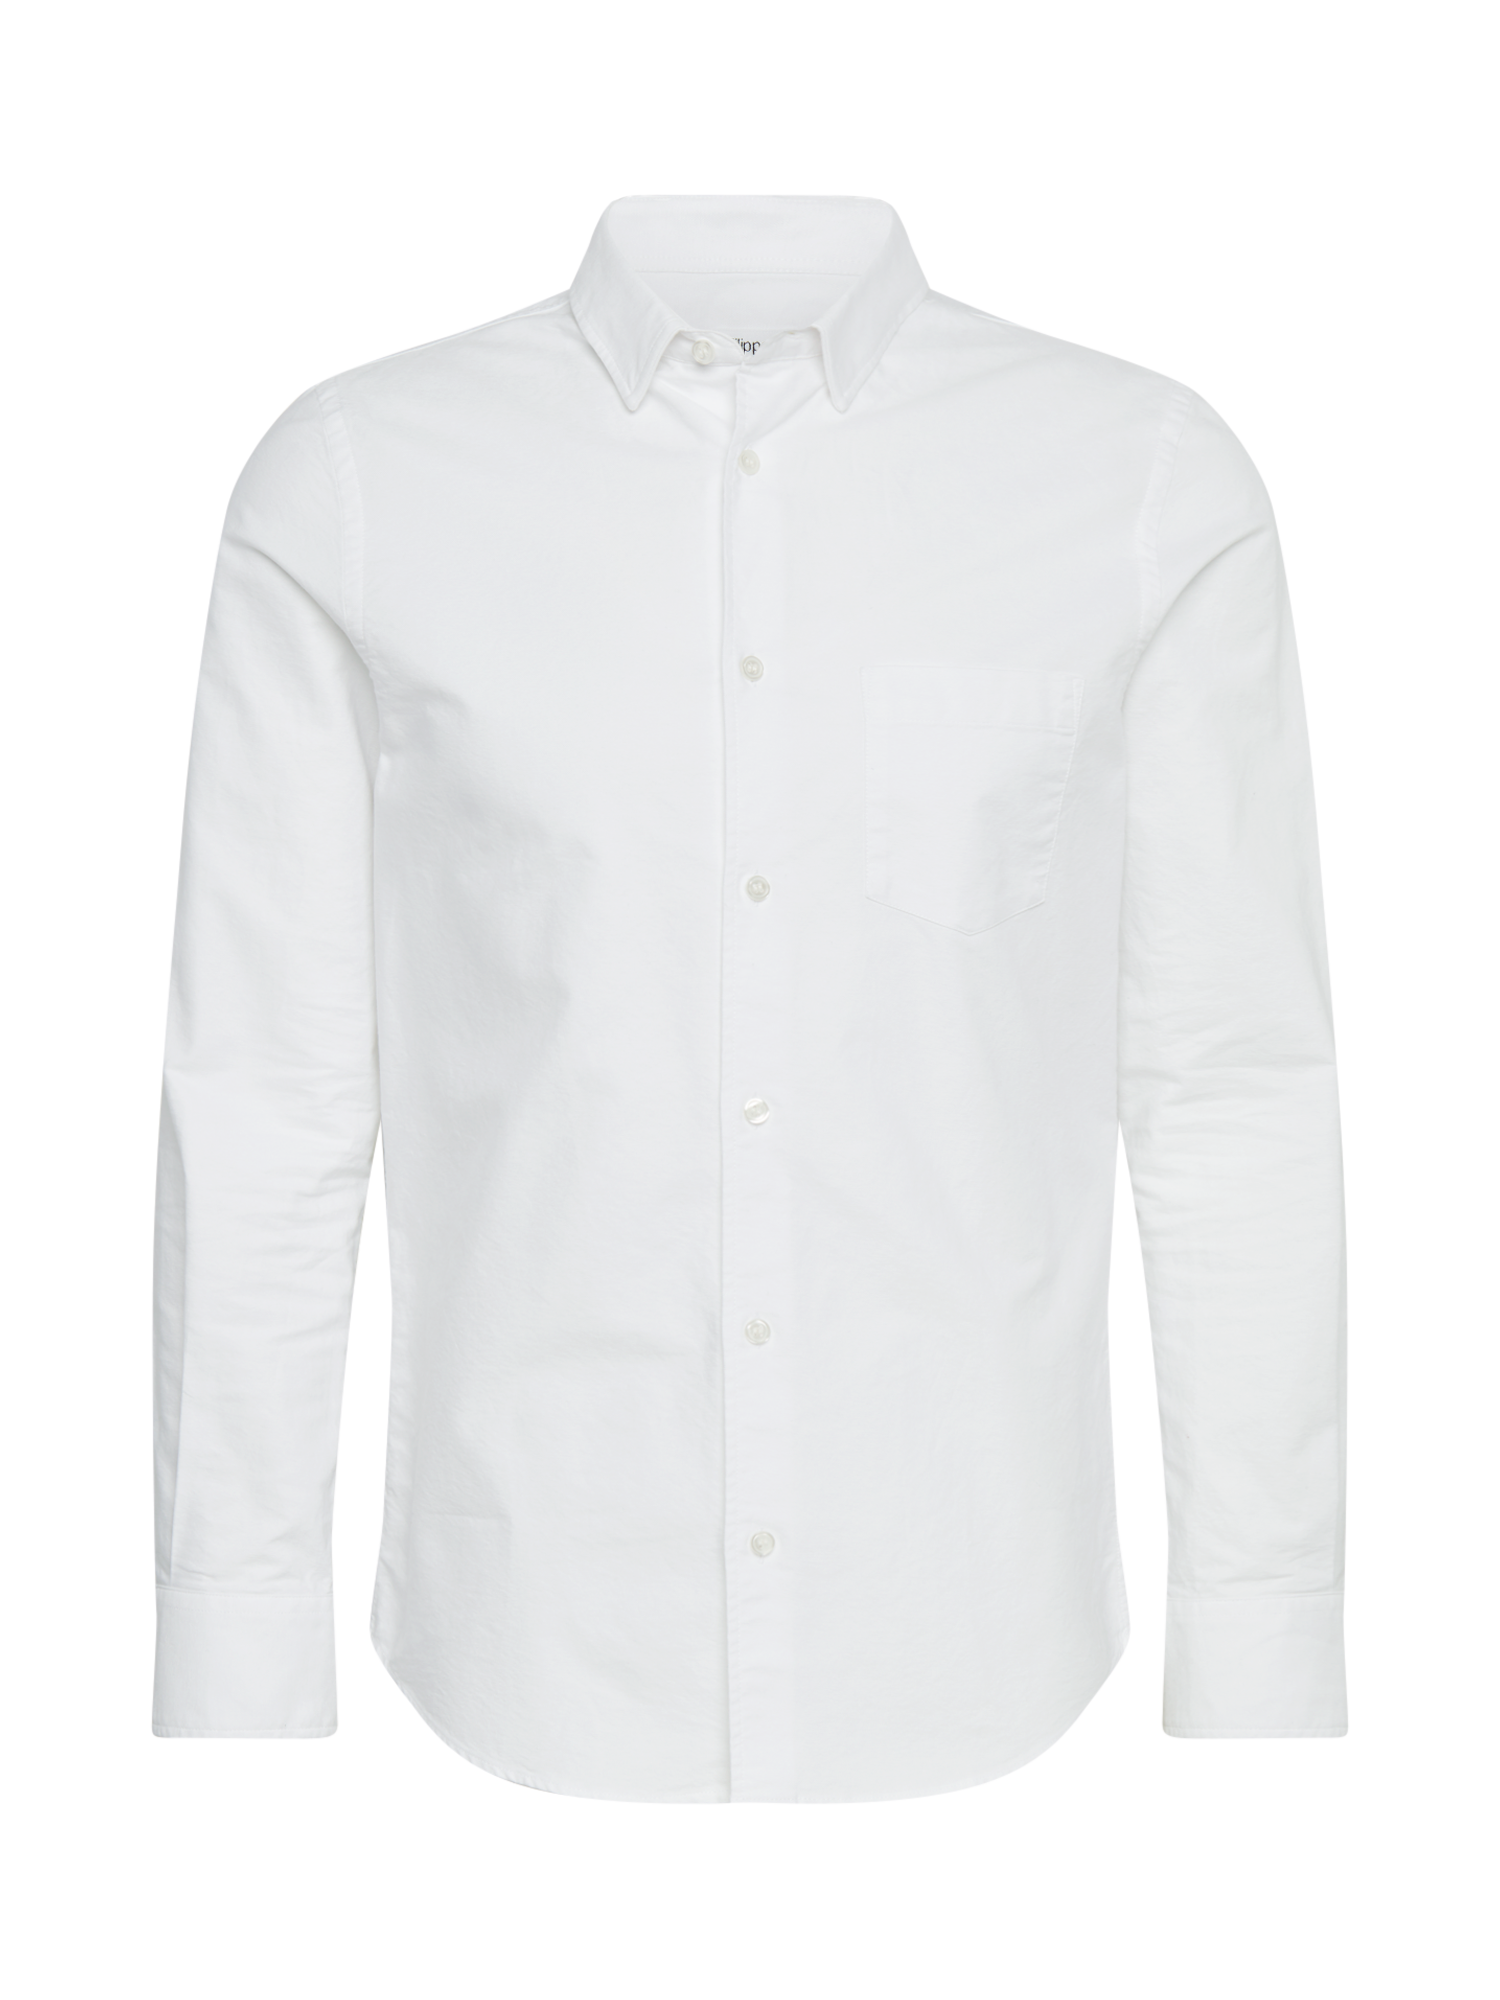 Uomo IWxxu Filippa K Camicia business M. Tim Oxford Shirt in Bianco 